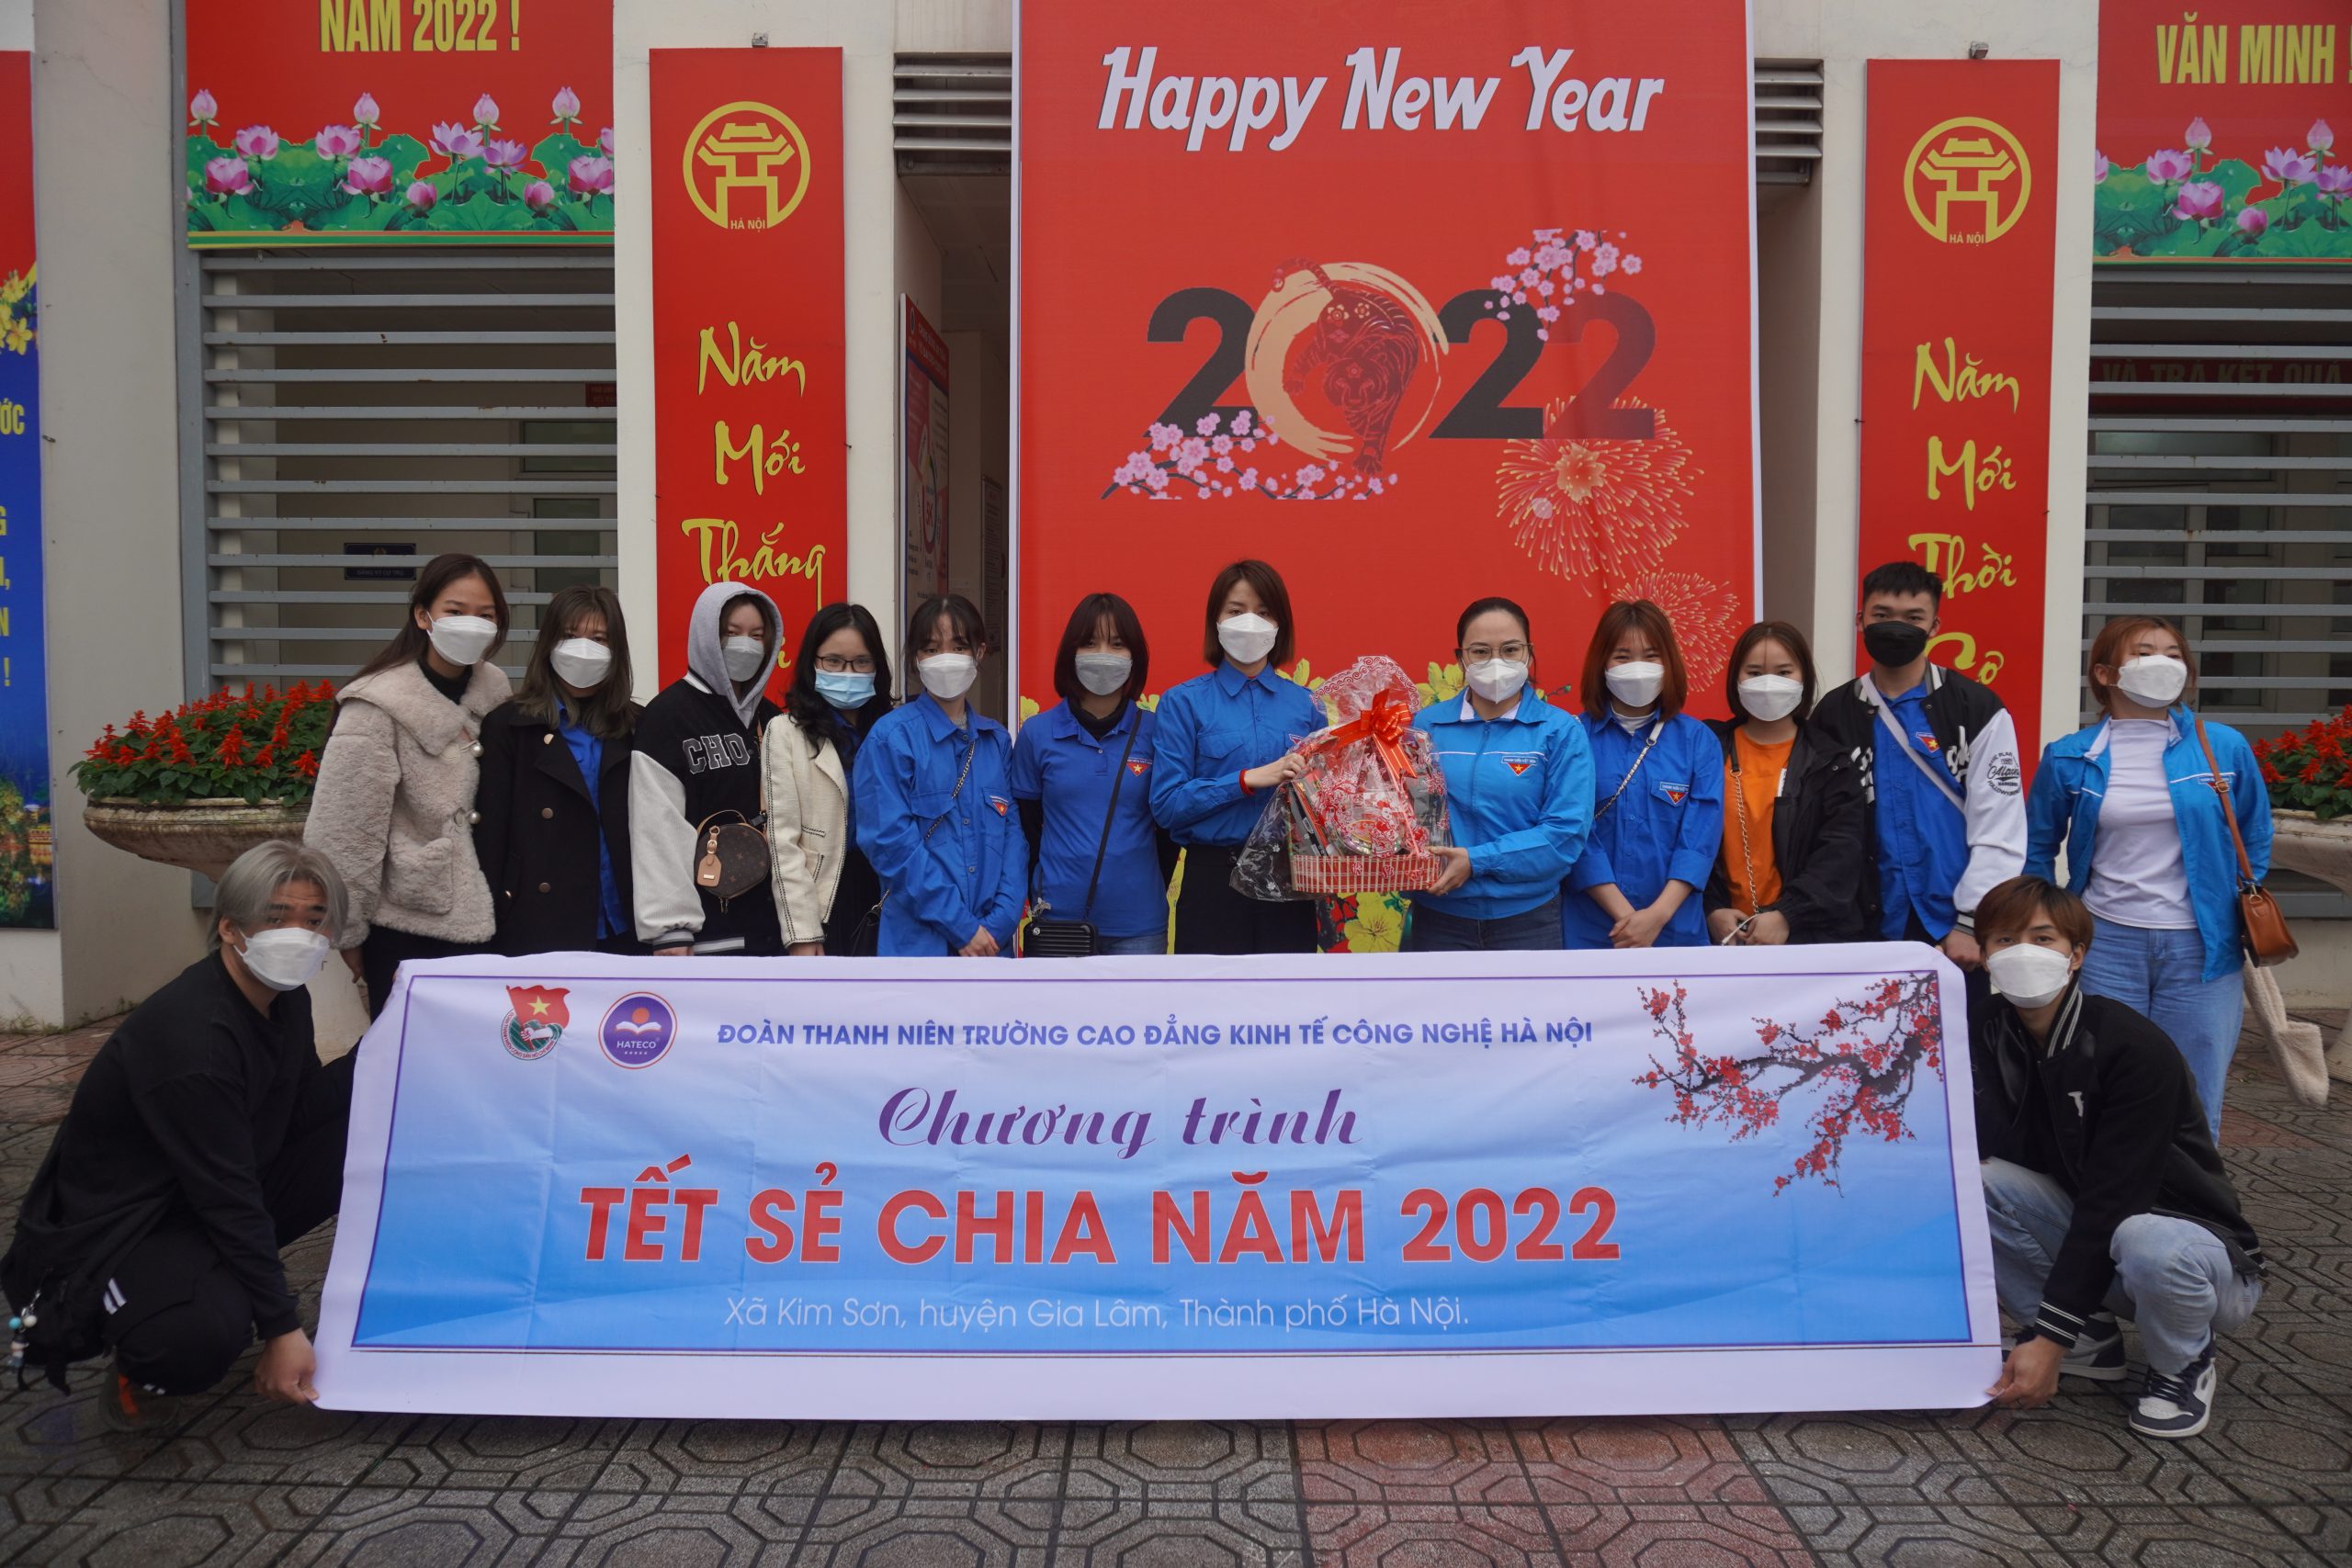 Chương trình “Tết sẻ chia năm 2022” do BCH Đoàn trường Cao đẳng Kinh tế Công nghệ tổ chức sẽ trao phần quà đến với bạn học sinh nghèo ở huyện Gia Lâm, thành phố Hà Nội